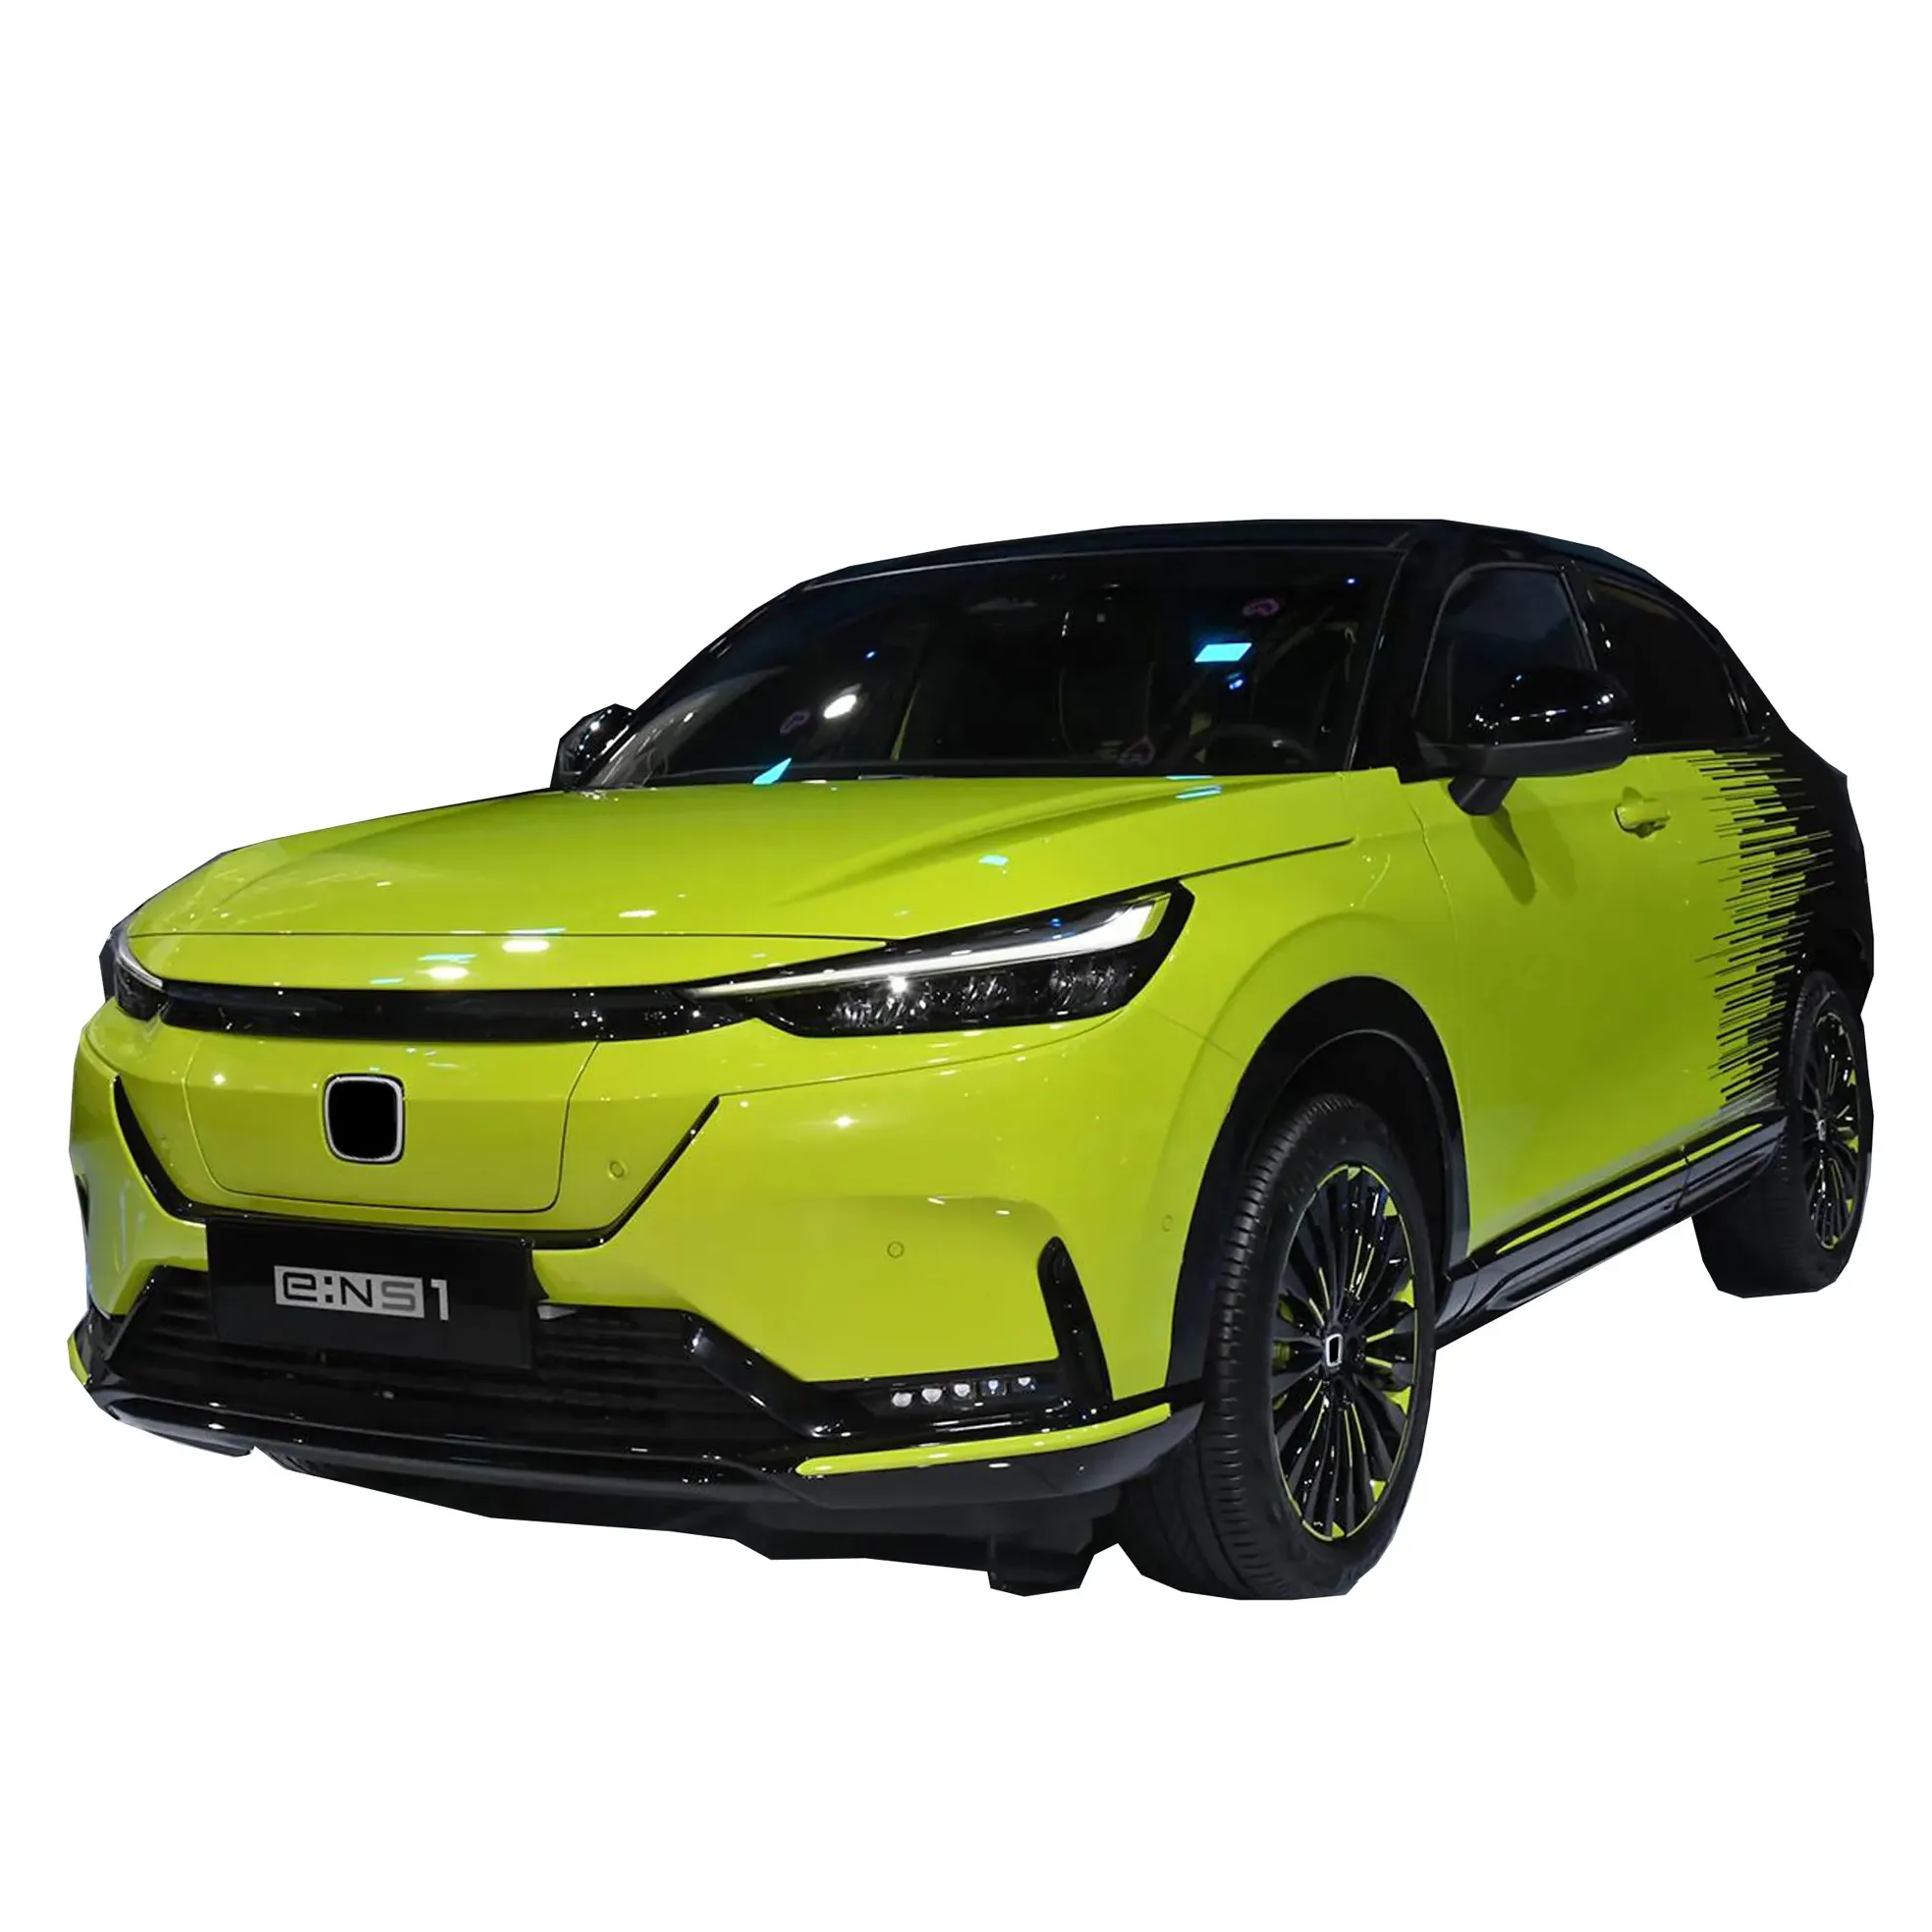 Honda Ens1 510 Km Bentian & honda ensw1 buatan Tiongkok Ev kendaraan energi baru untuk dijual